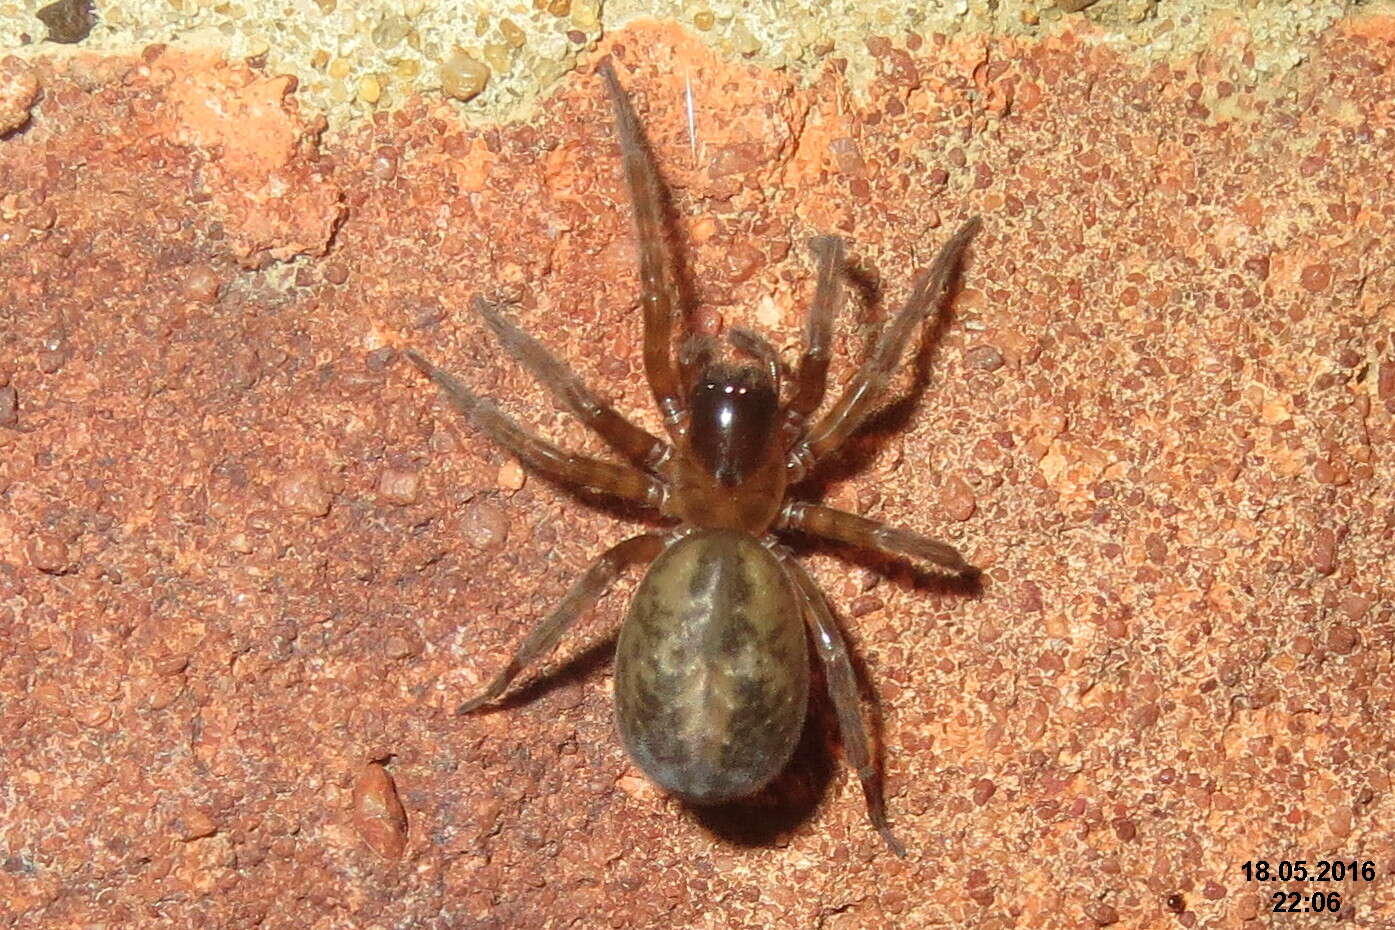 Image of snake-back spider